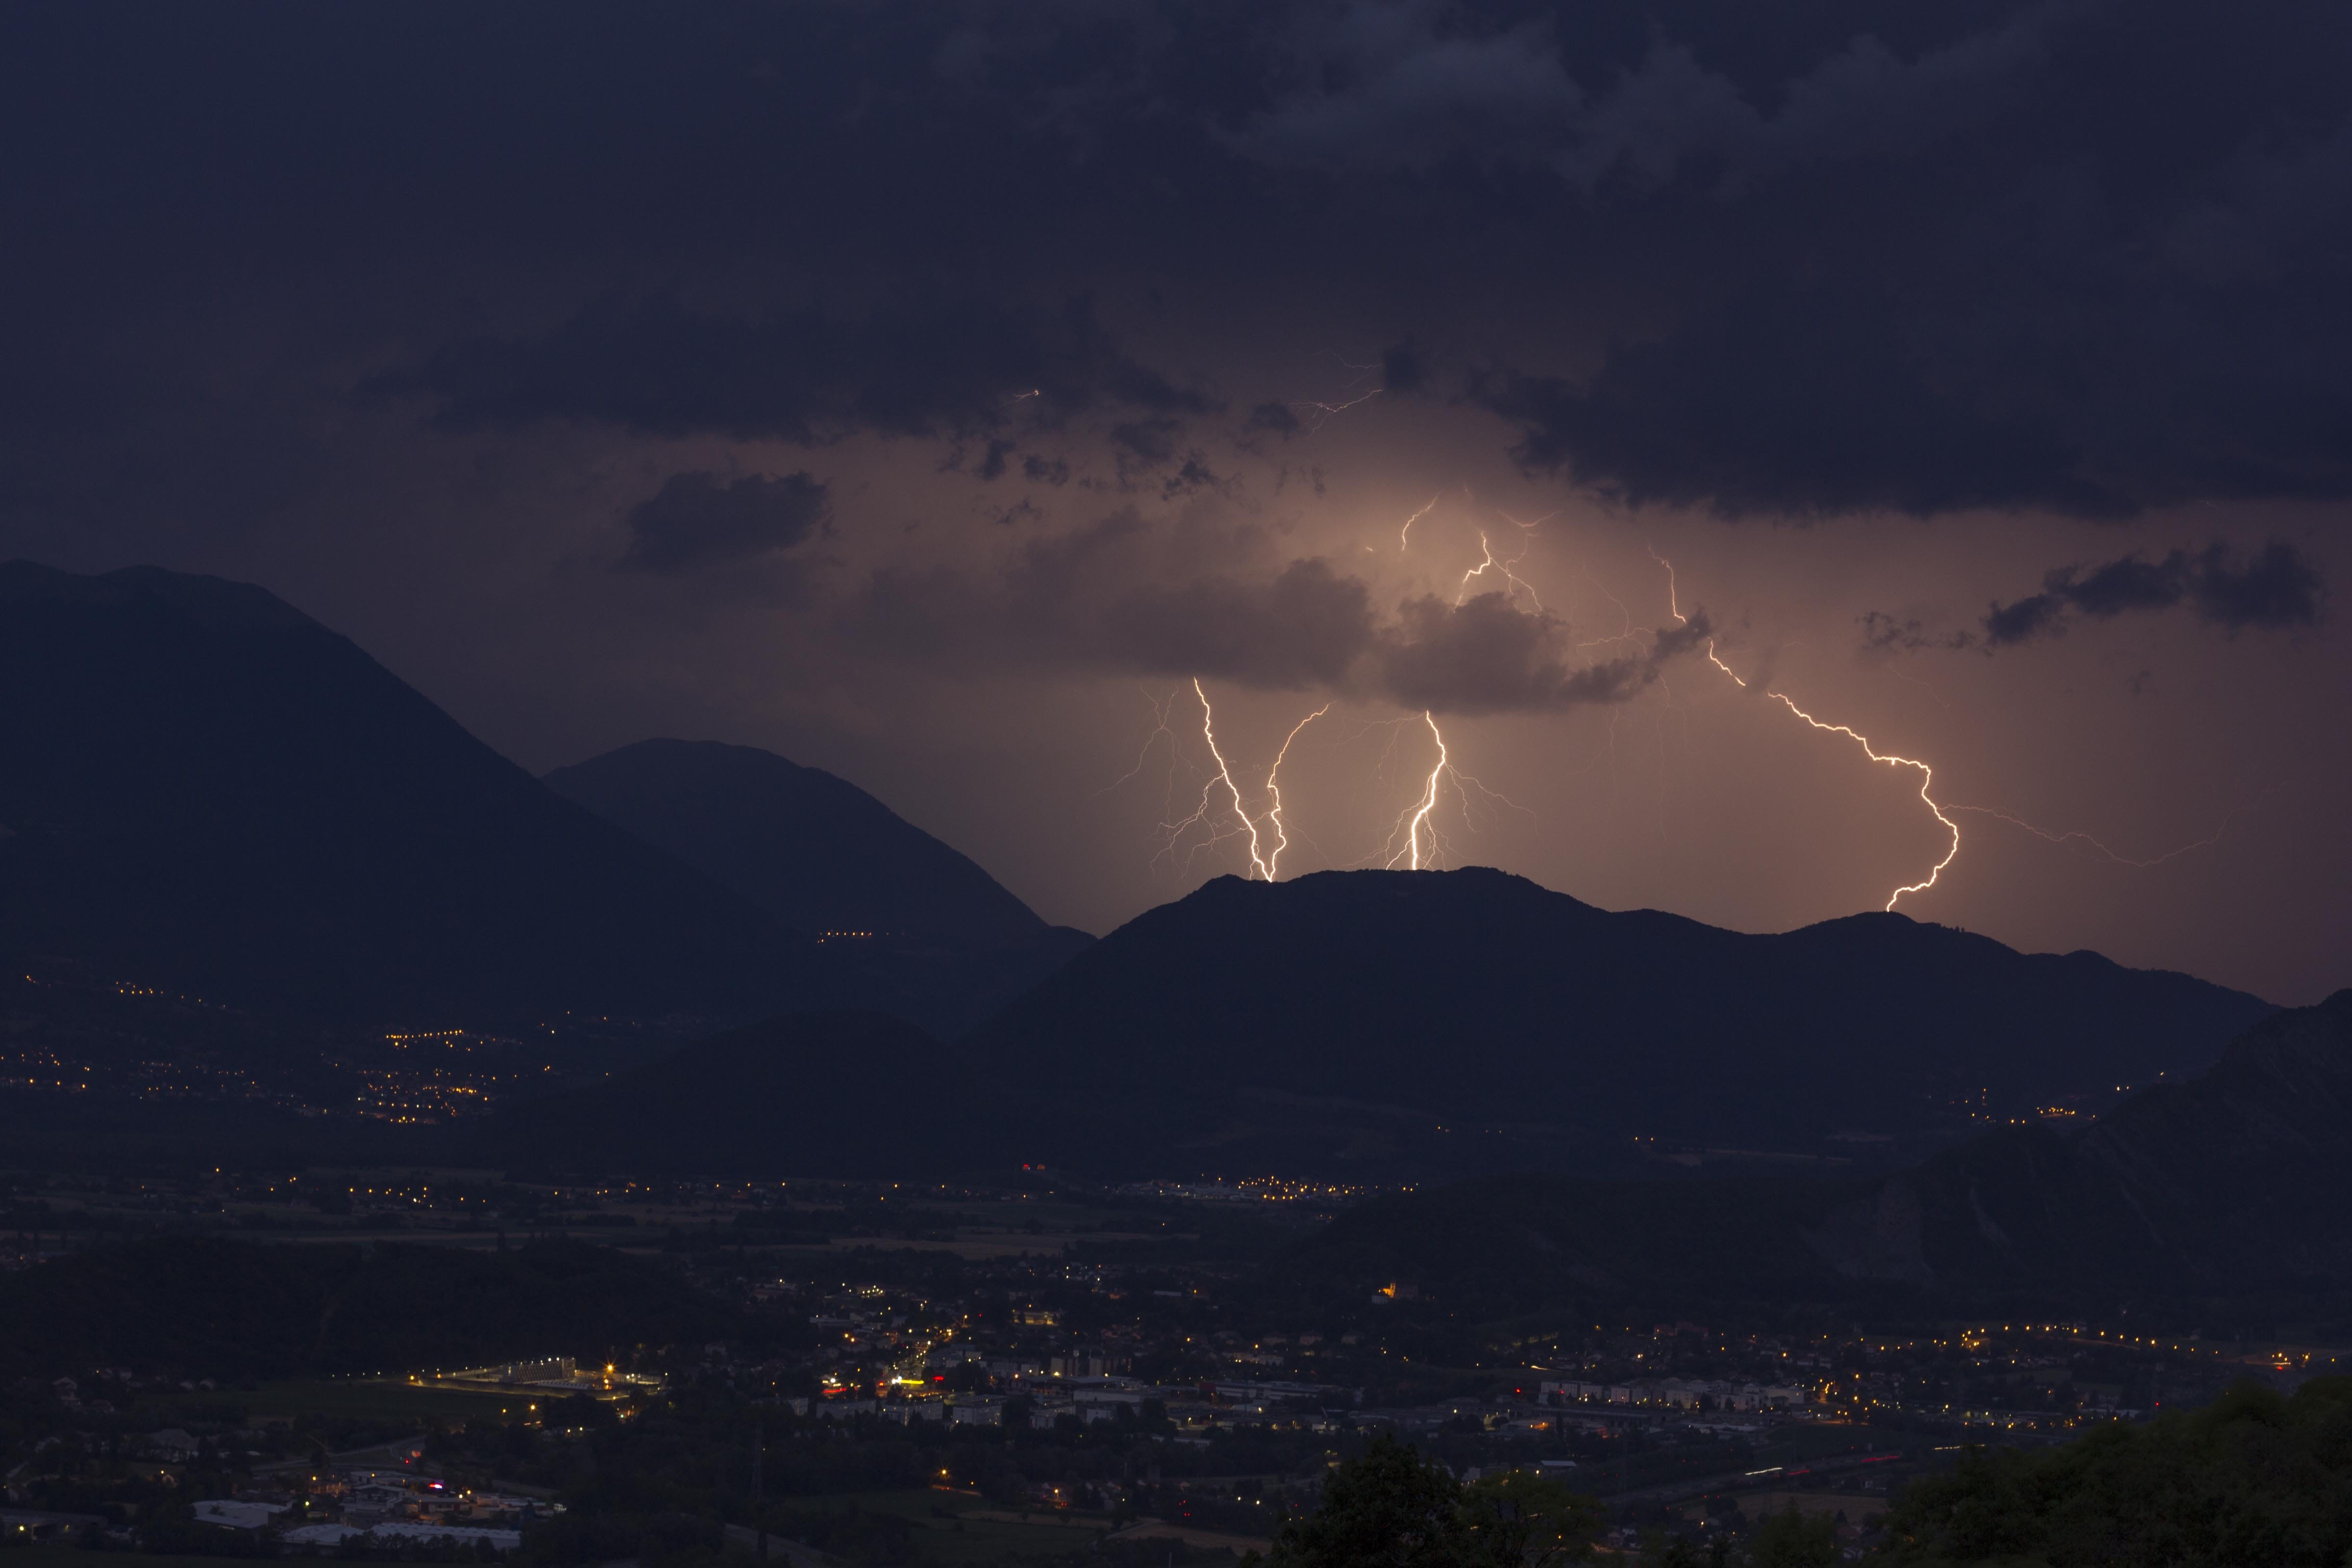 orage au sud de Grenoble dans le trieves avec d'énorme rafale de vents - 21/07/2020 22:00 - frederic sanchis